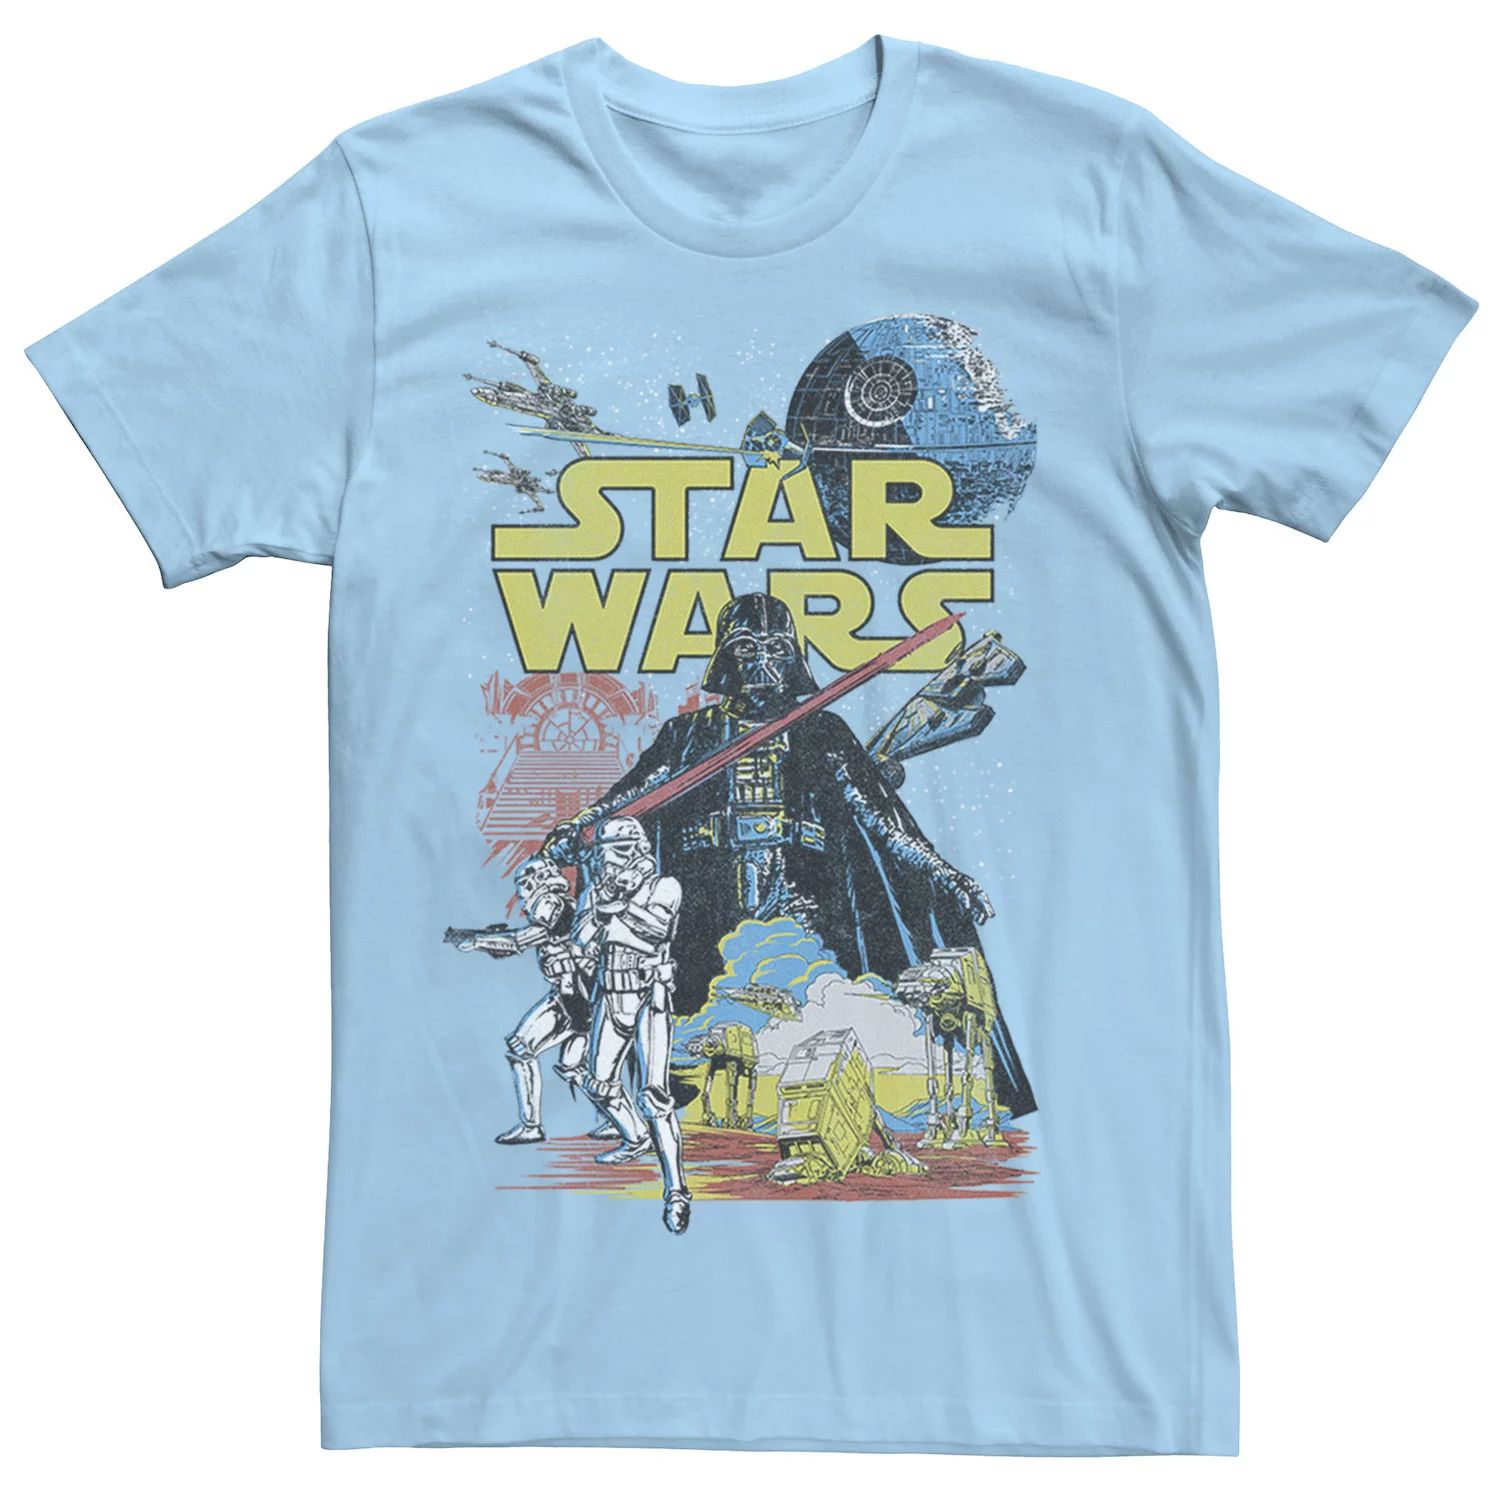 Мужская классическая футболка с графическим плакатом Rebel Star Wars, светло-синий мужская классическая футболка с графическим плакатом rebel white star wars белый